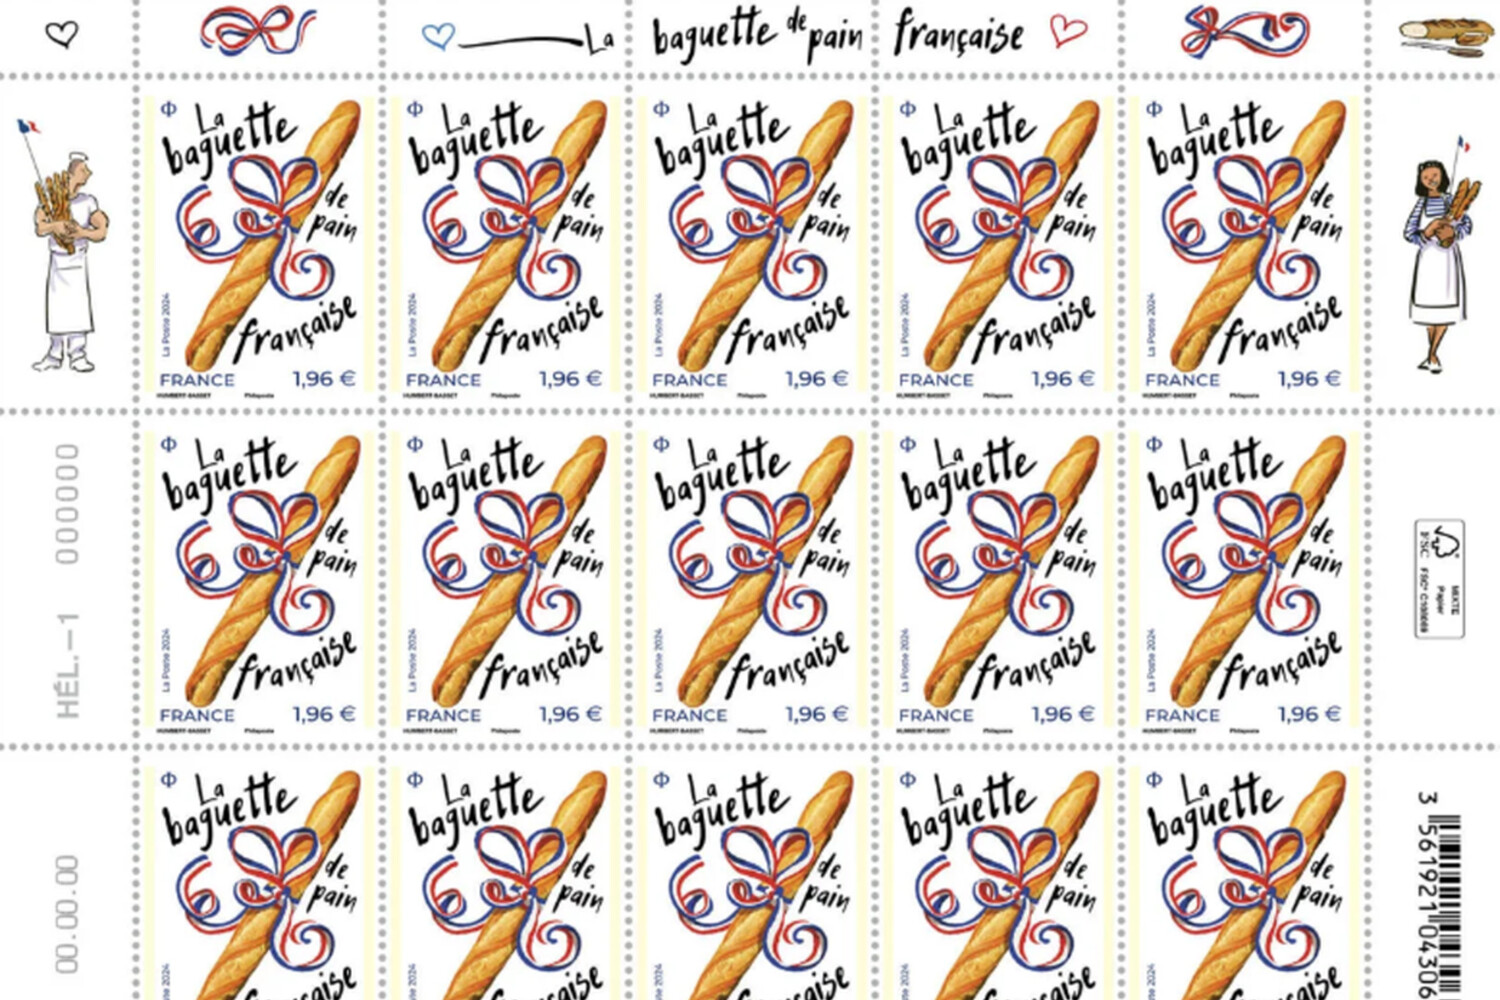 Французская почта выпустила ароматизированную марку с запахом багета